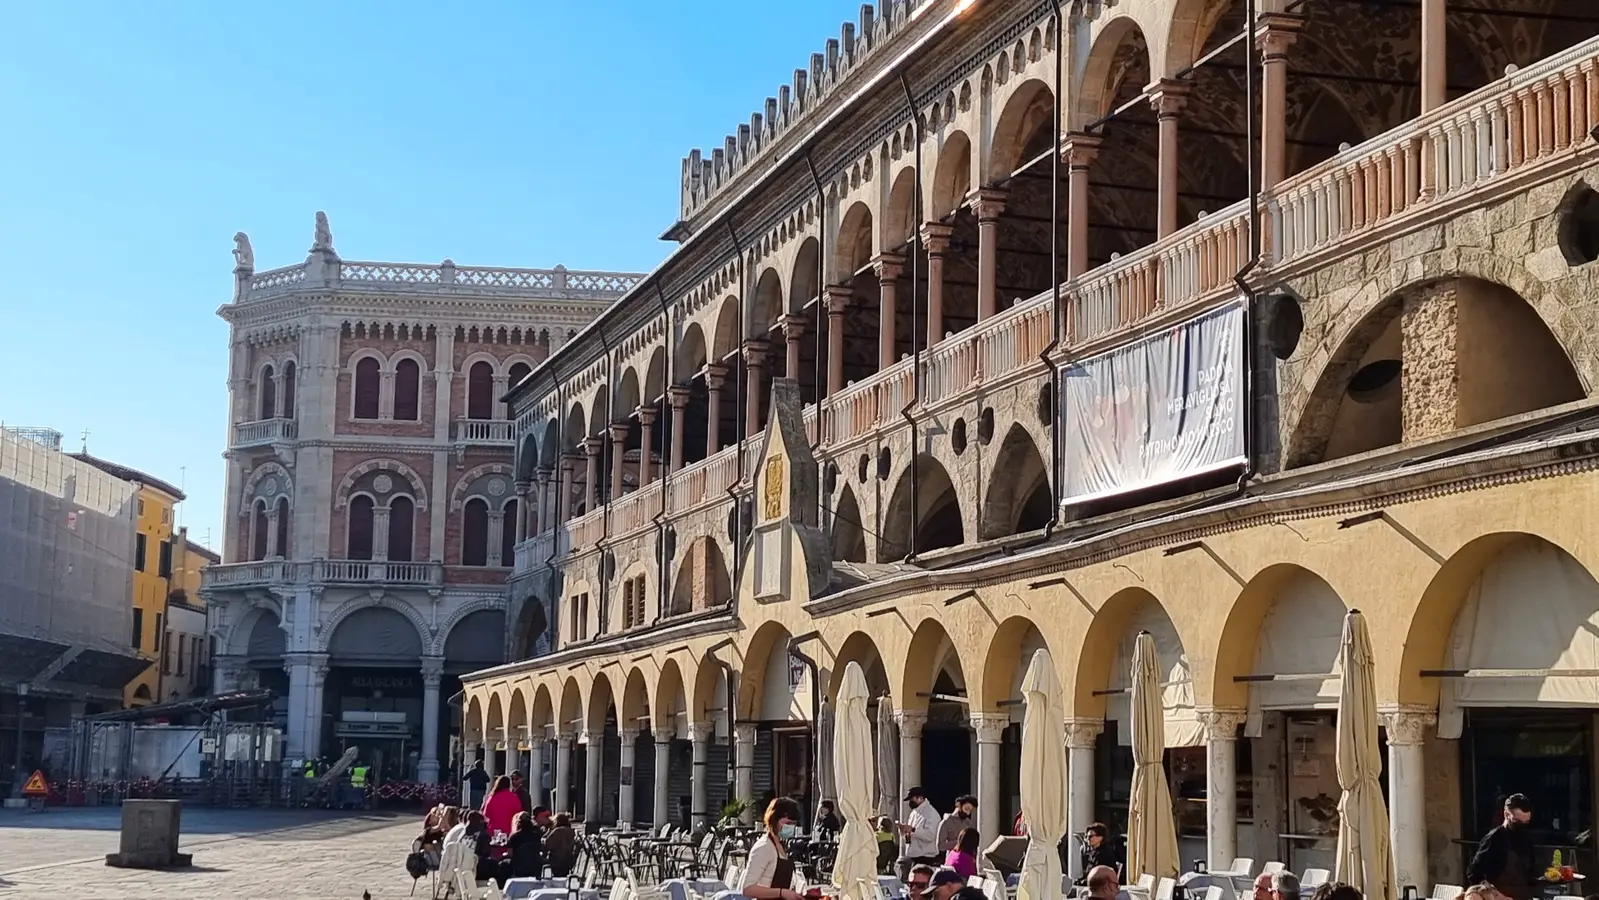 Palazzo della Ragione liegt auf dem Marktplatz von Padua. Das Palazzo zählt zu den wichtigsten Sehenswürdigkeiten von Padua. 